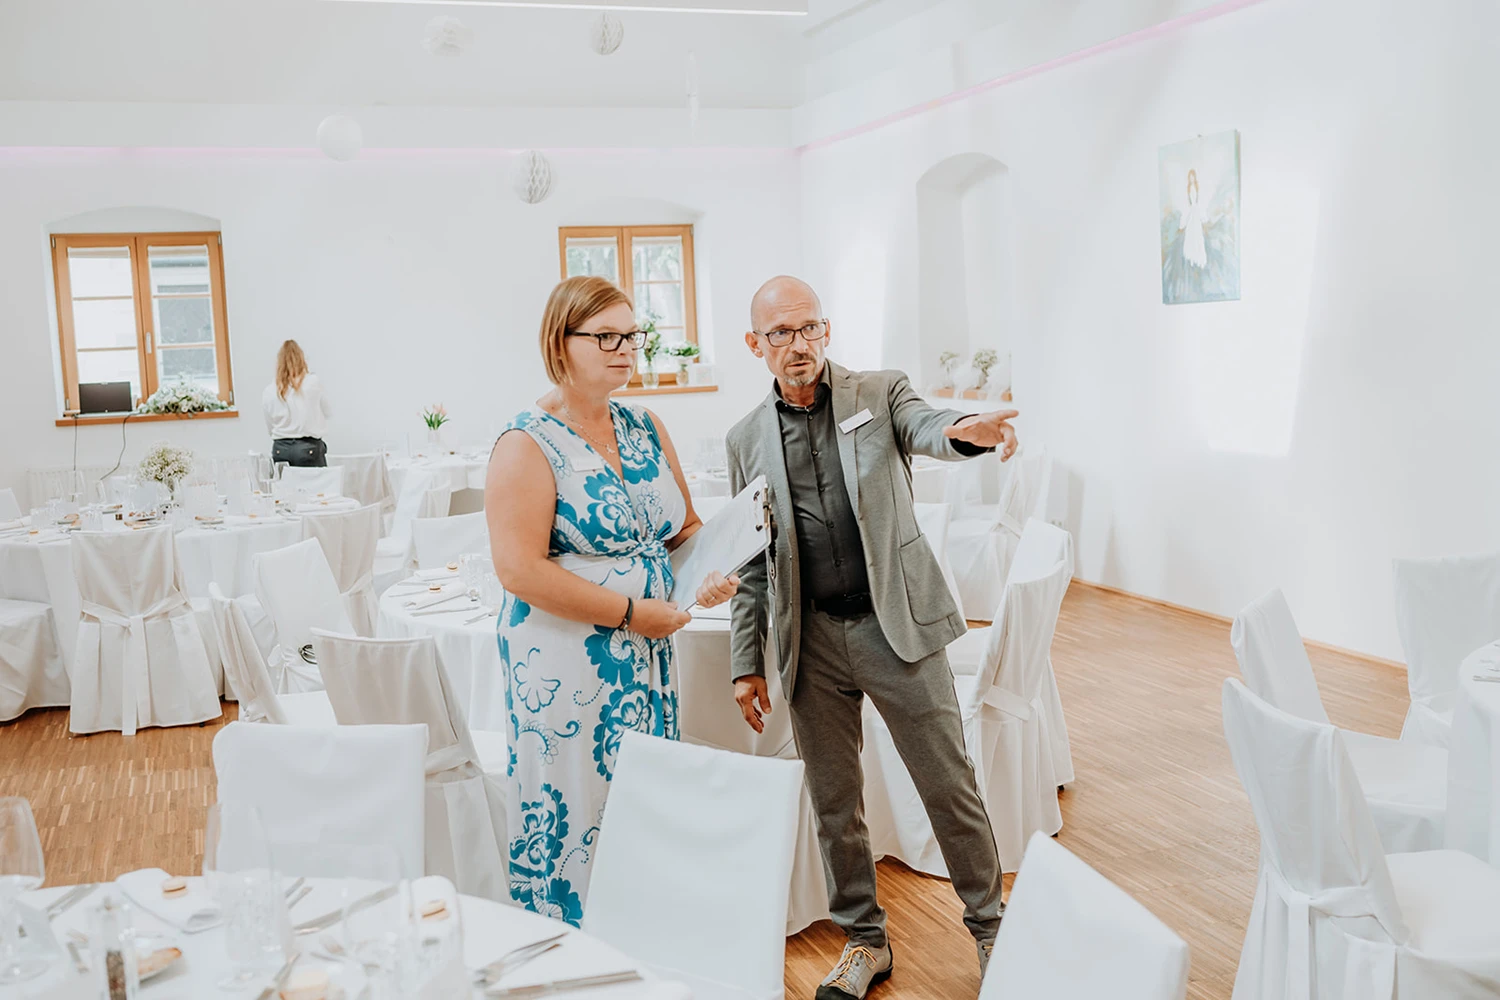 Ein Schnappschuss von Harald und Karin in einem Festsaal beim Hochzeit organisieren